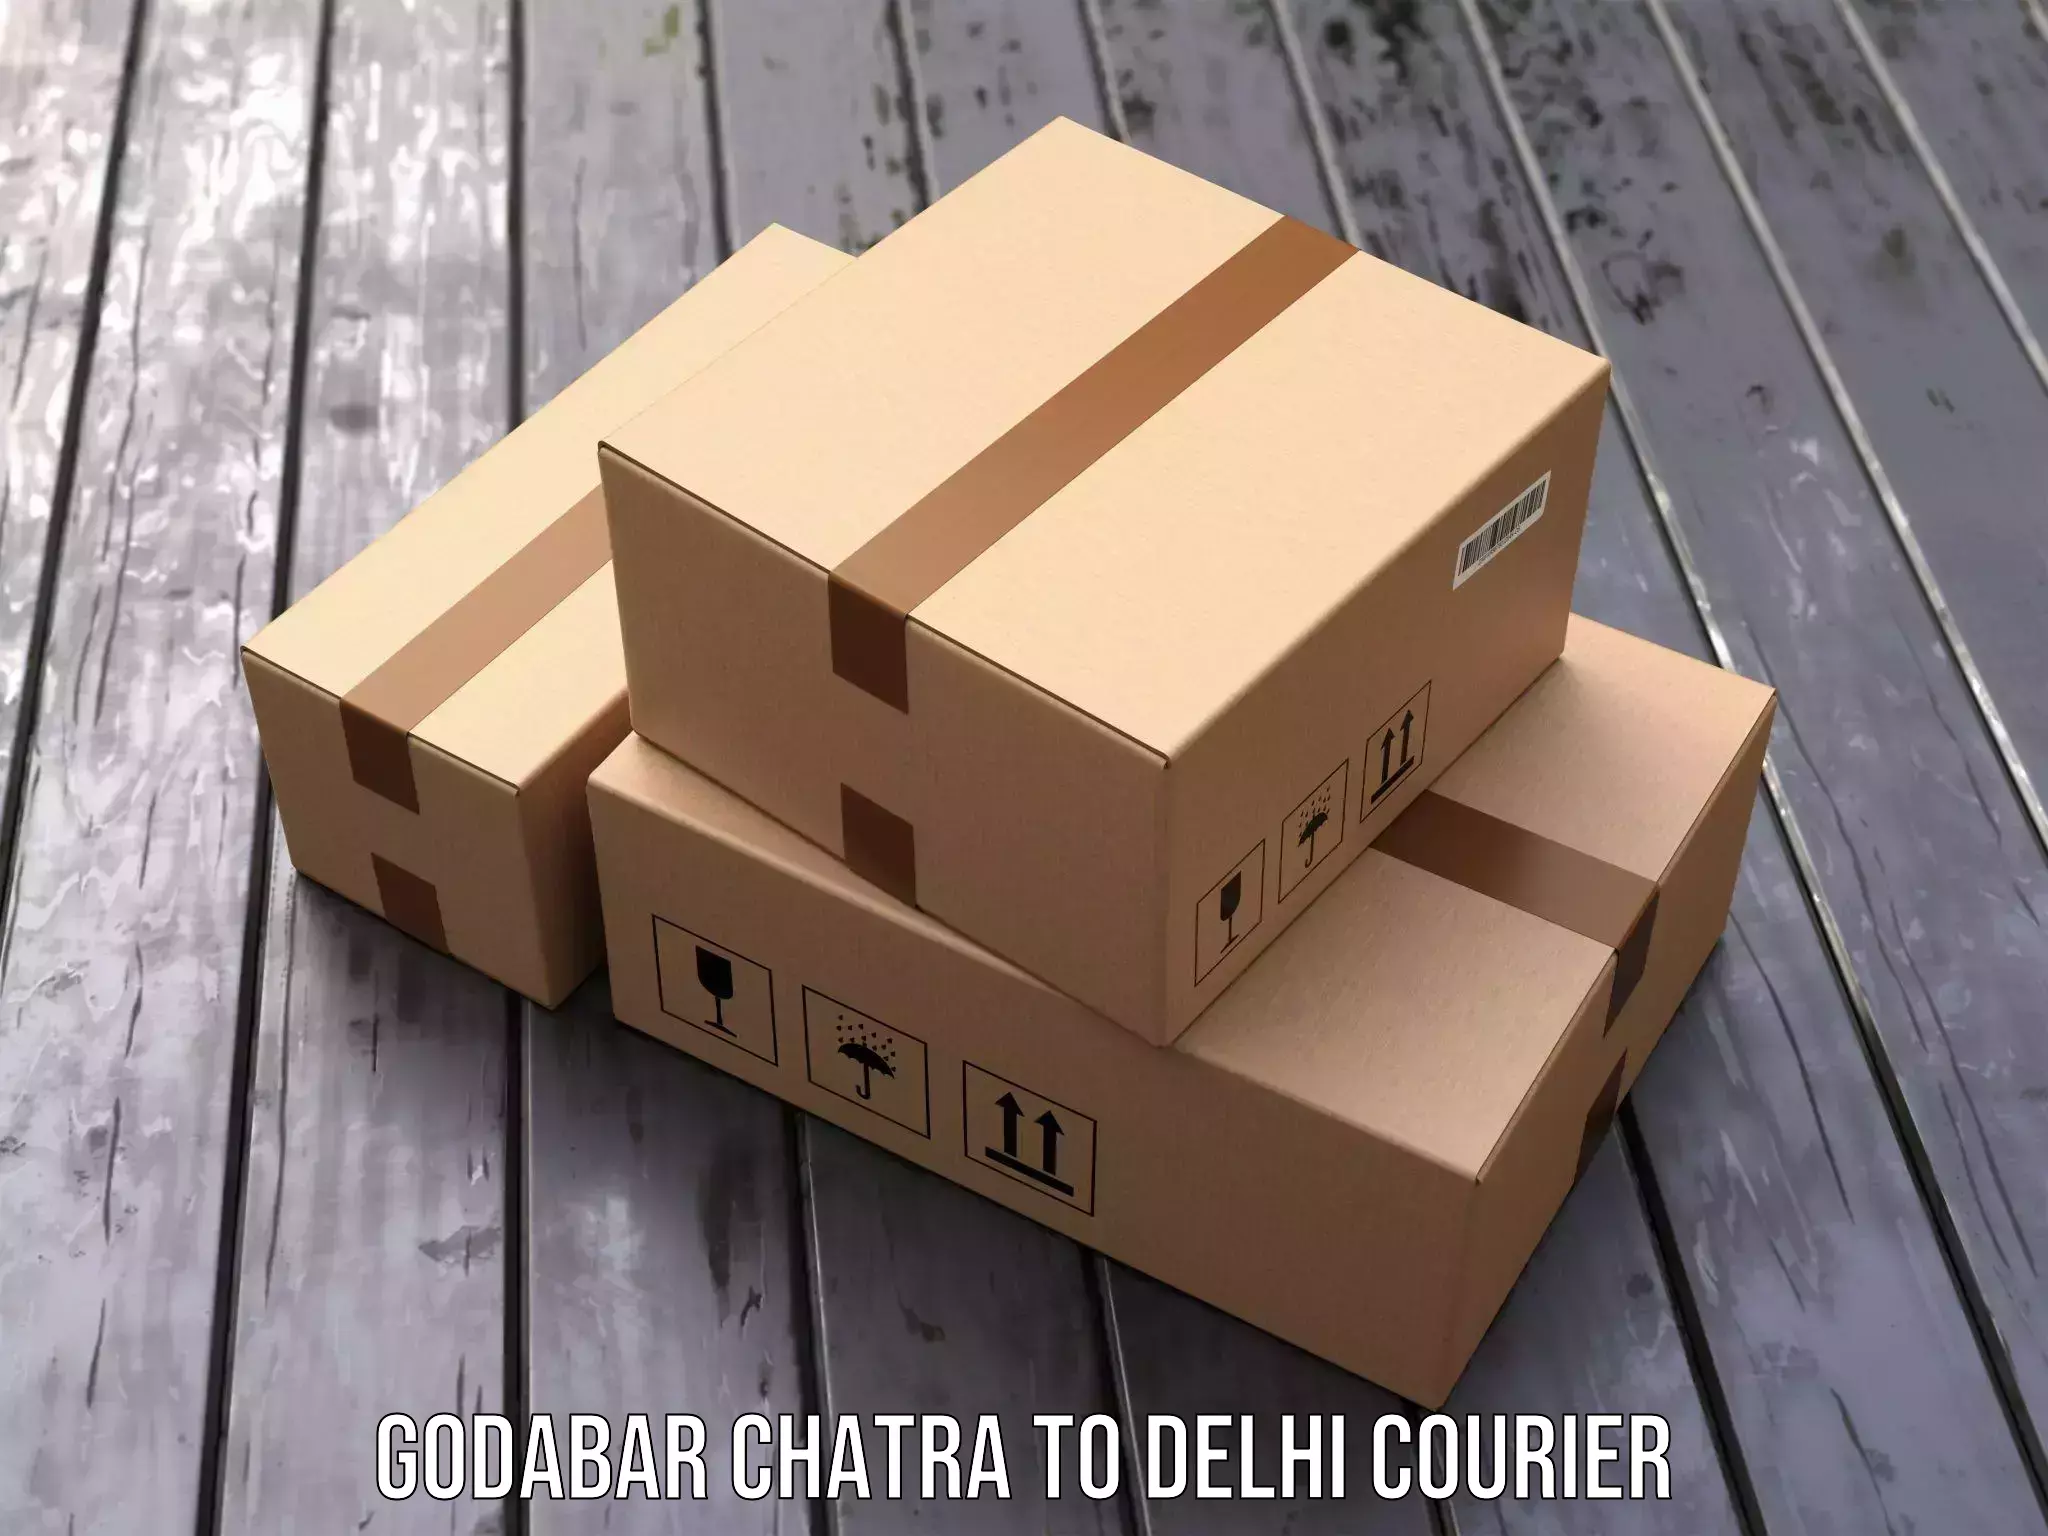 Urban courier service Godabar Chatra to Ramesh Nagar